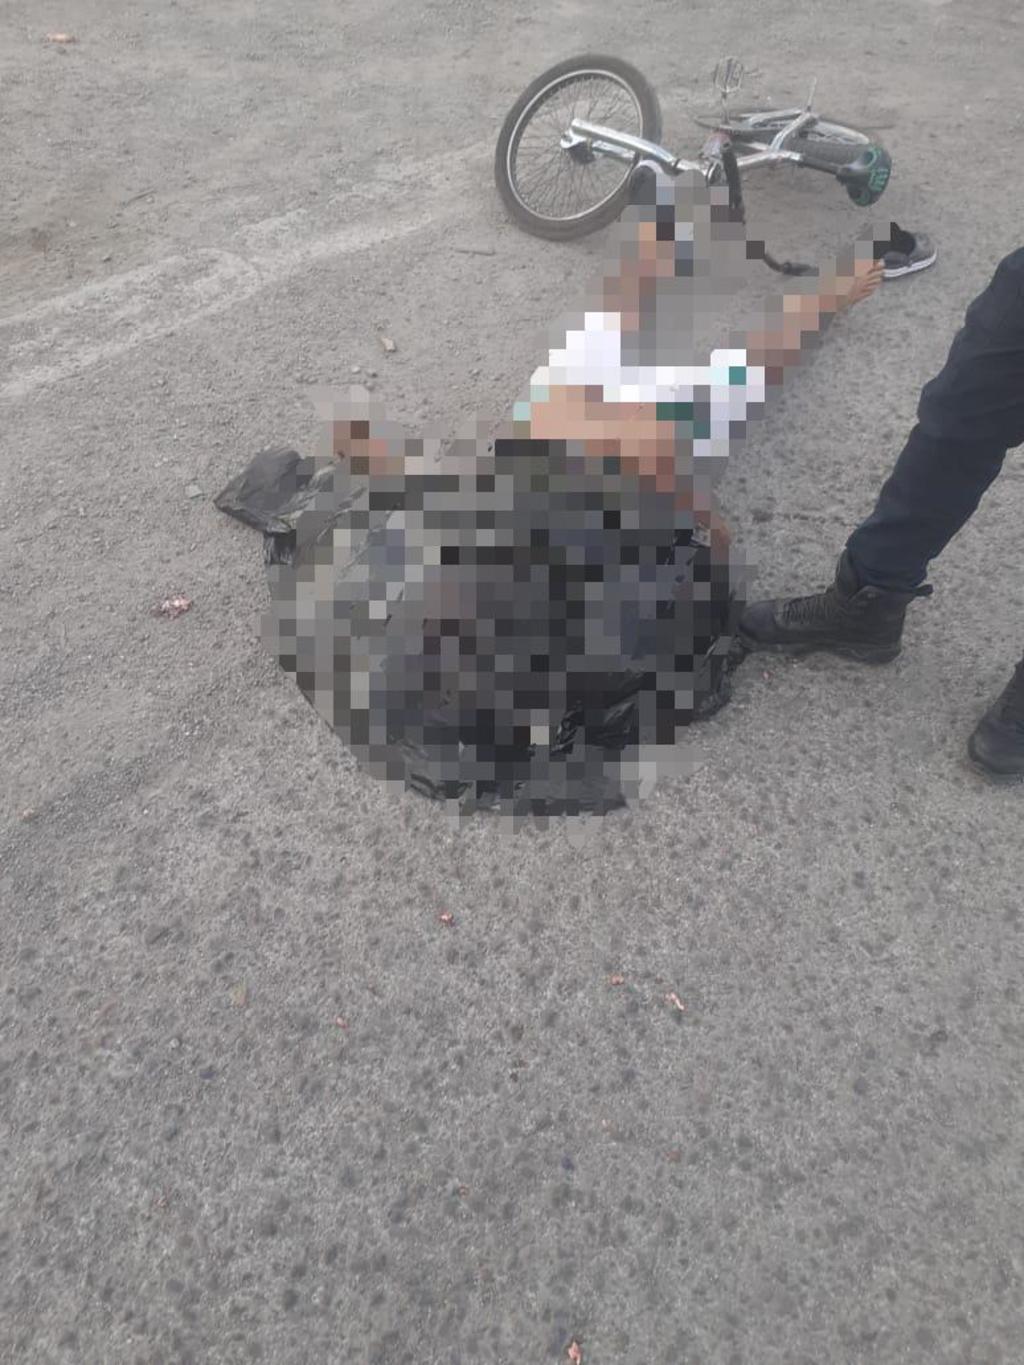 El joven ciclista terminó sin vida sobre la carpeta asfáltica tras ser arrollado por un camión que se dio a la fuga.